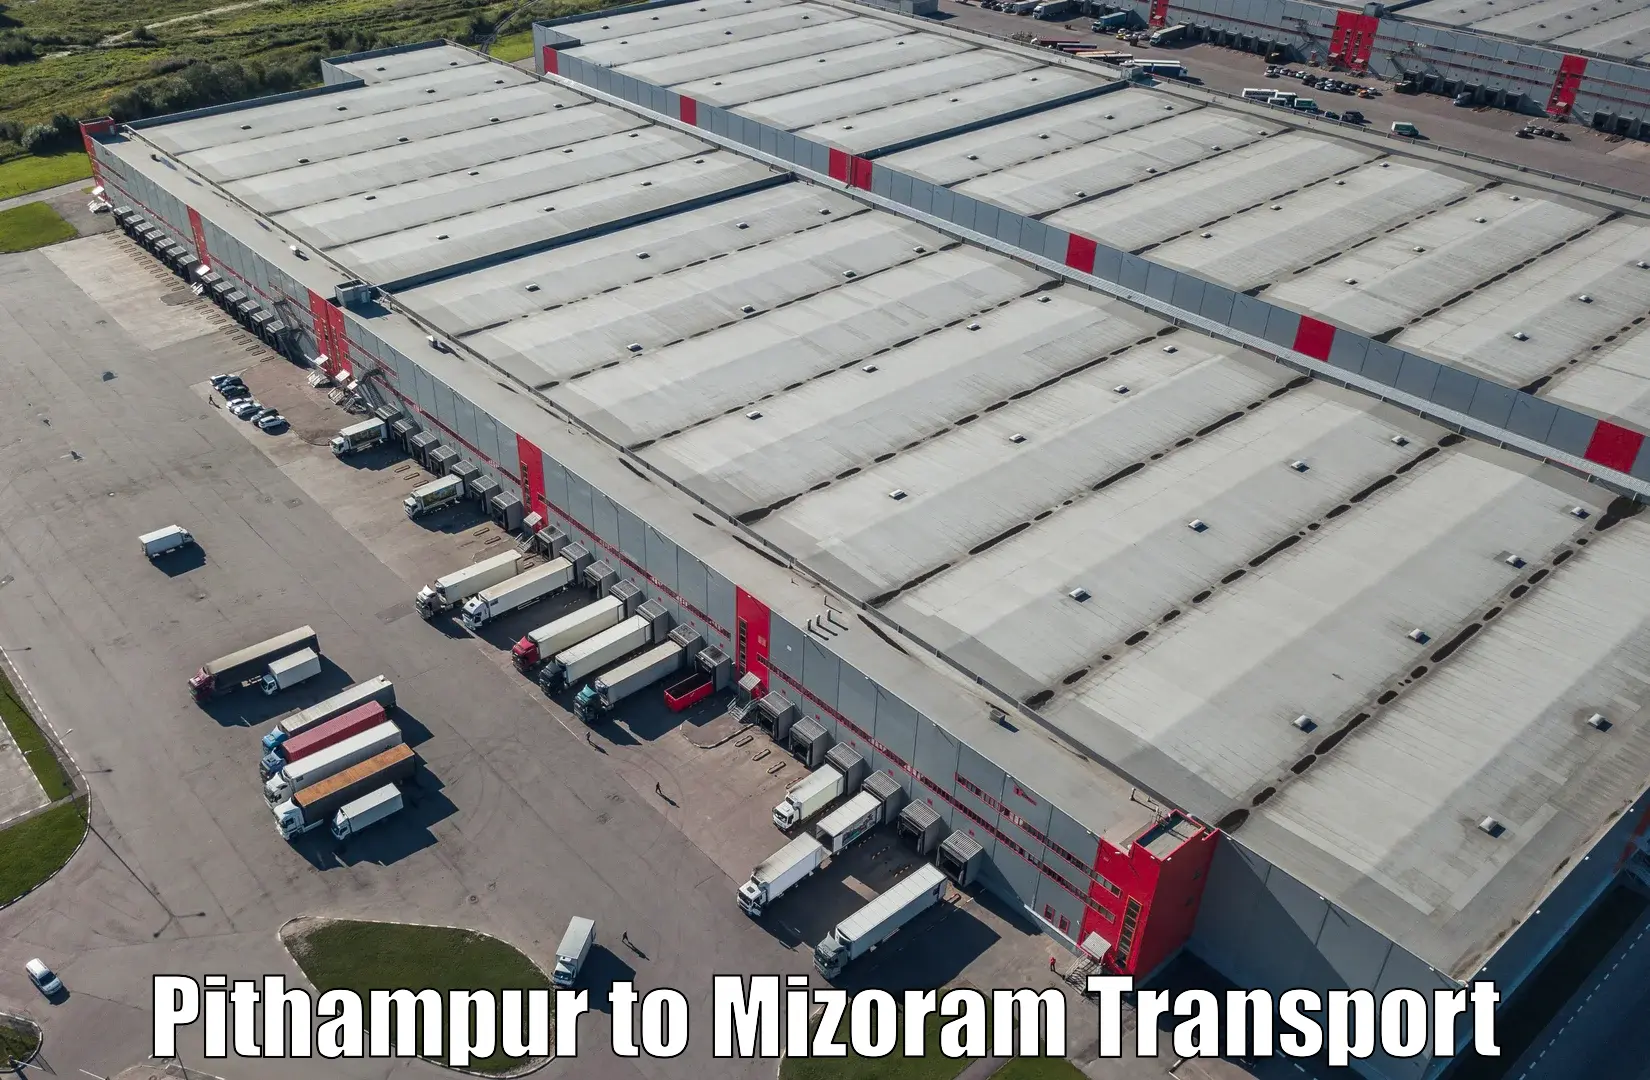 Furniture transport service Pithampur to Mizoram